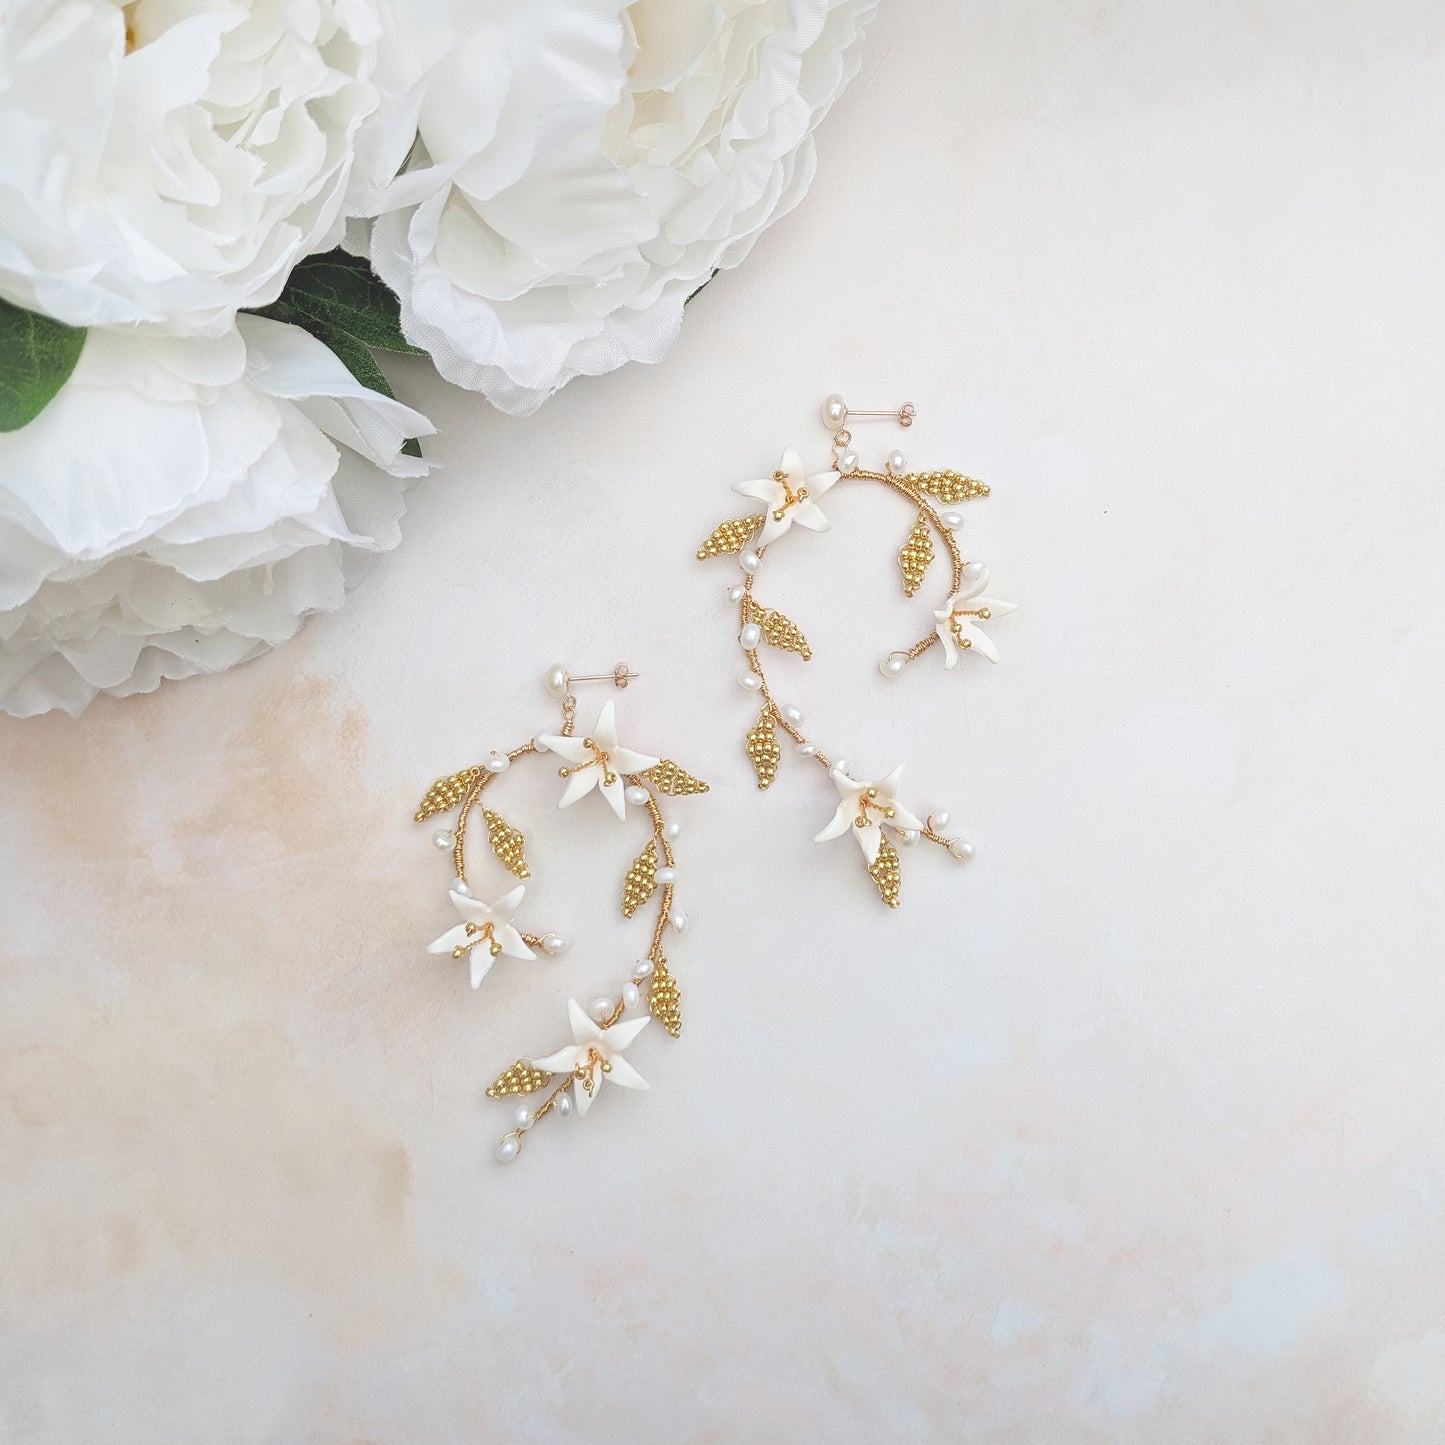 Statement modern floral bridal earrings for weddings - Susie Warner